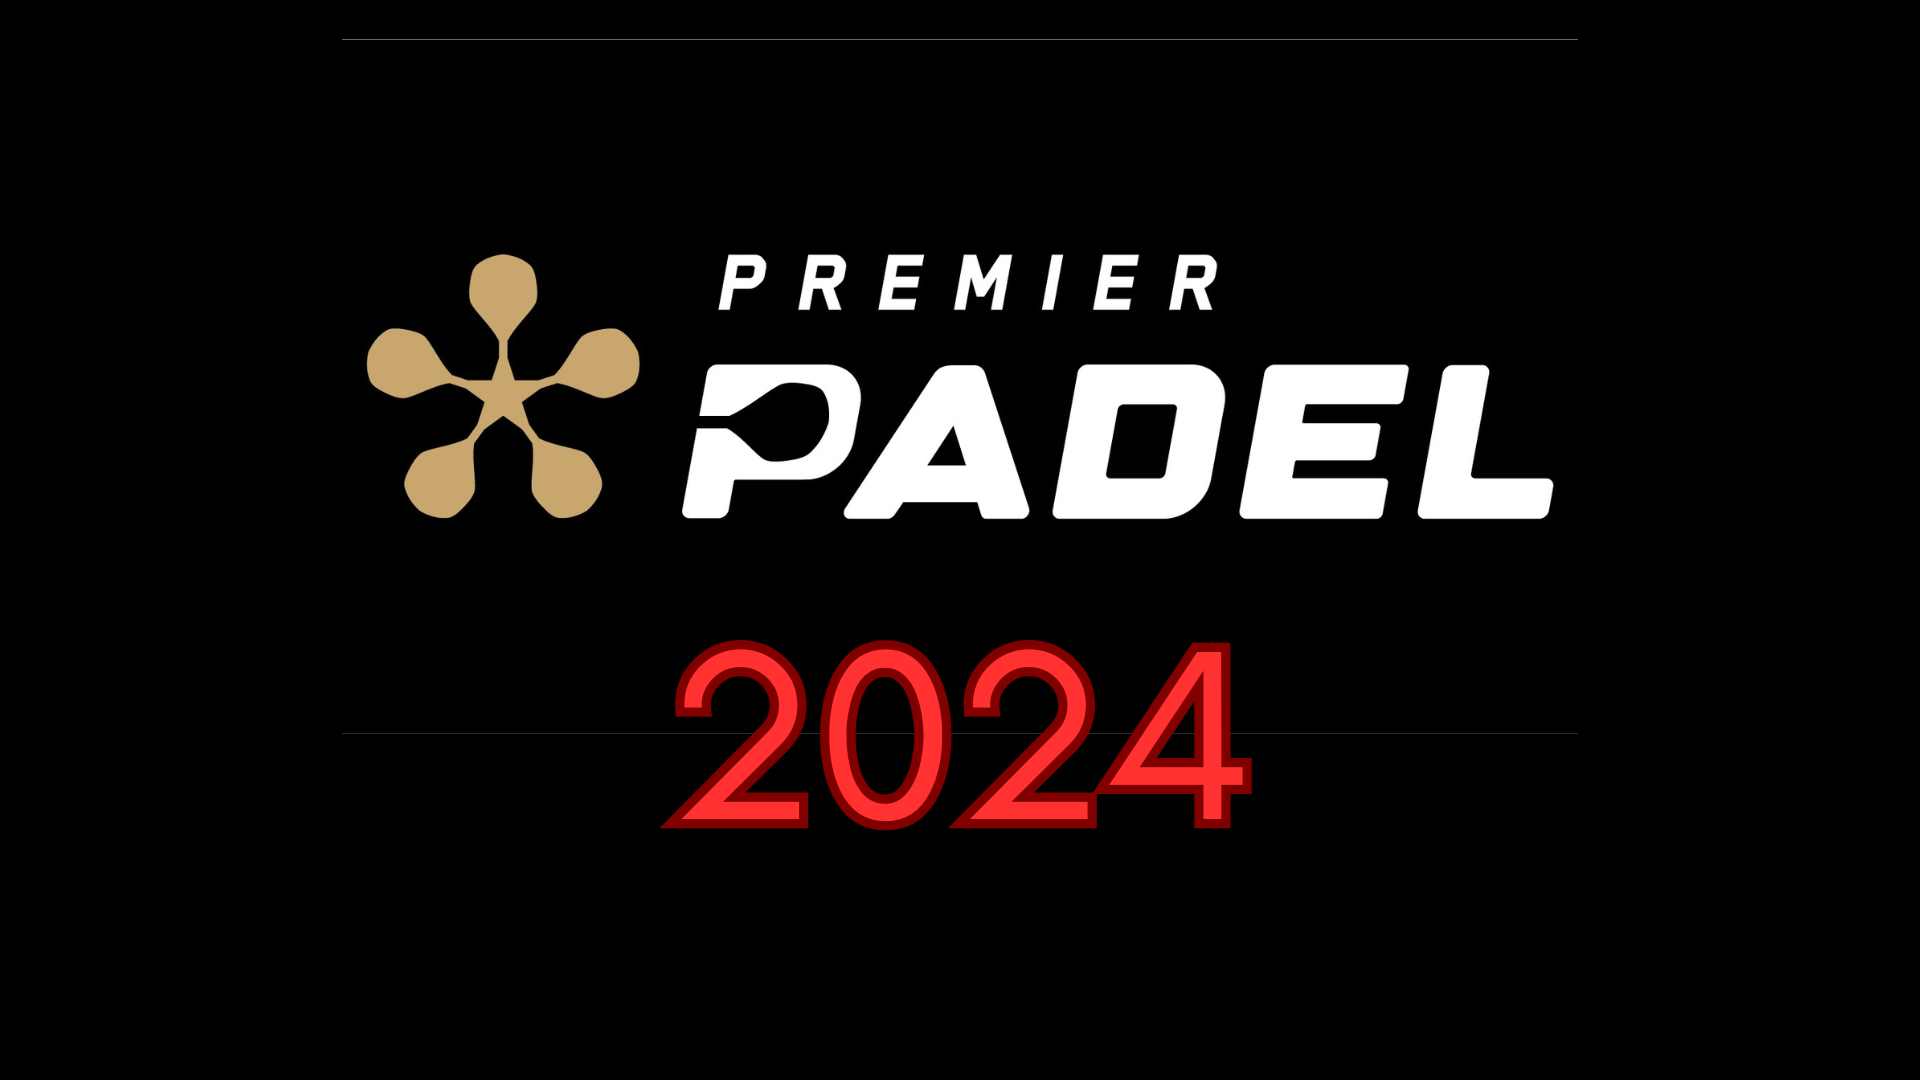 Premier Padel Logotipo da janela de transferência de 2024